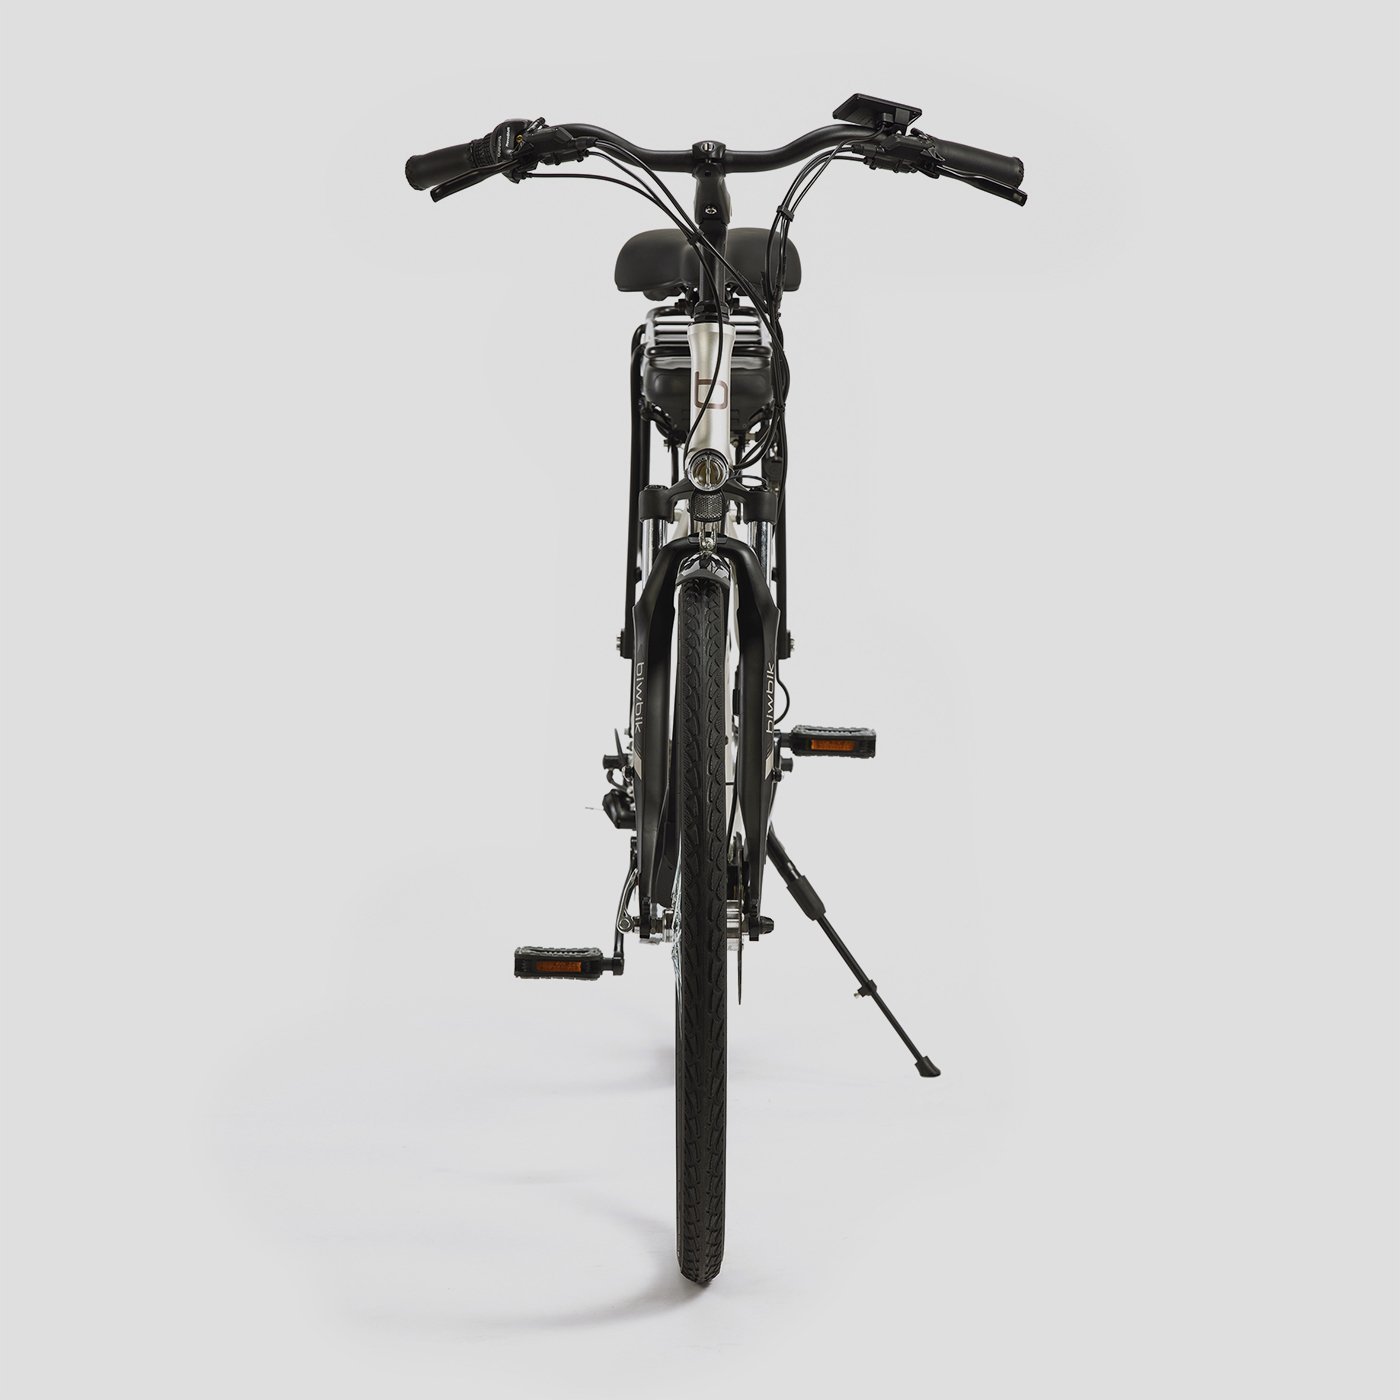 Malmo urban electric bike